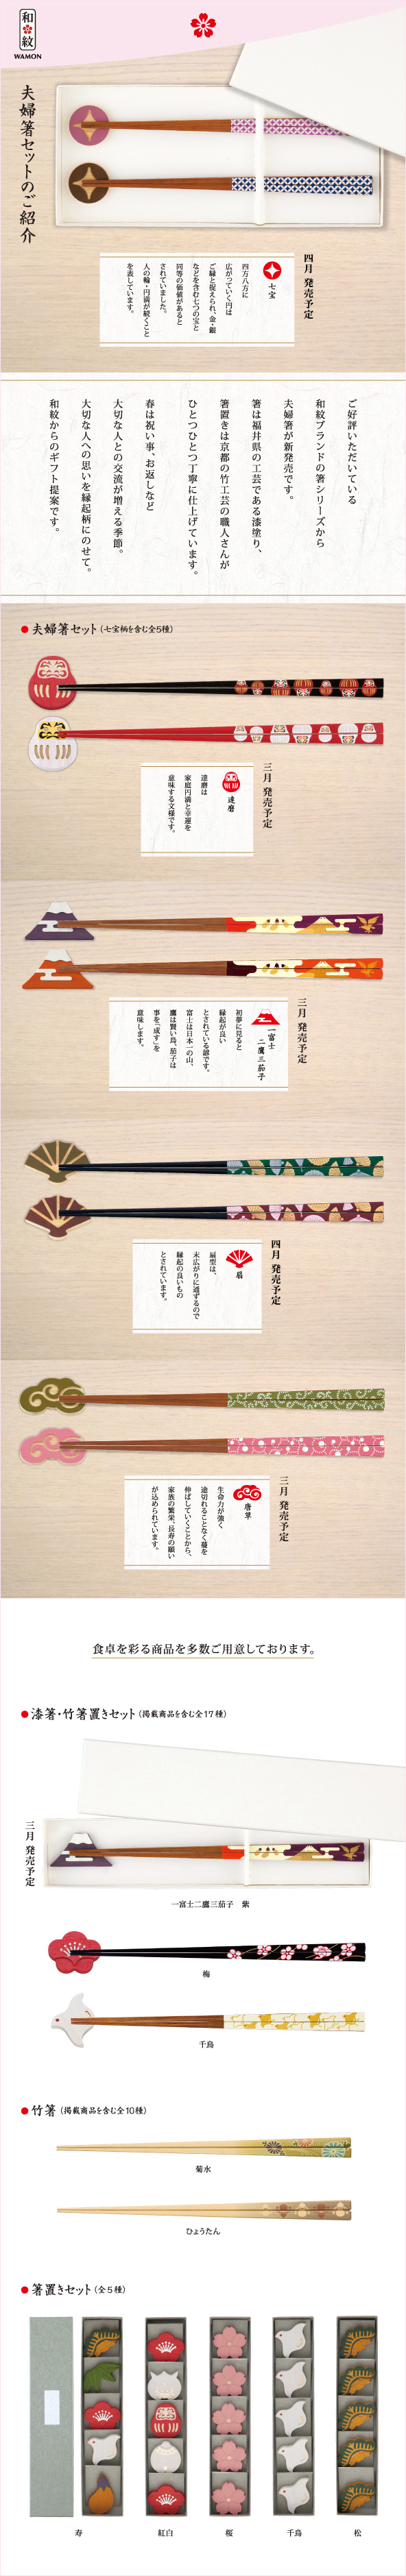 CORAZONメルマガ　20160223<br>

夫婦箸セットのご紹介<br>
ご紹介いただいている<br>
和紋ブランドの箸シリーズから<br>
夫婦箸が新発売です。<br>
箸は福井県の工芸である漆塗り、<br>
箸置きは京都の竹工芸の職人さんが<br>
ひとつひとつ丁寧に仕上げています。<br>
<br>
春は祝い事、お返しなど<br>
大切な人との交流が増える季節。<br>
大切な人への思いを縁起柄にのせて。<br>
和紋からのギフト提案です。<br>

<br>
<br>
